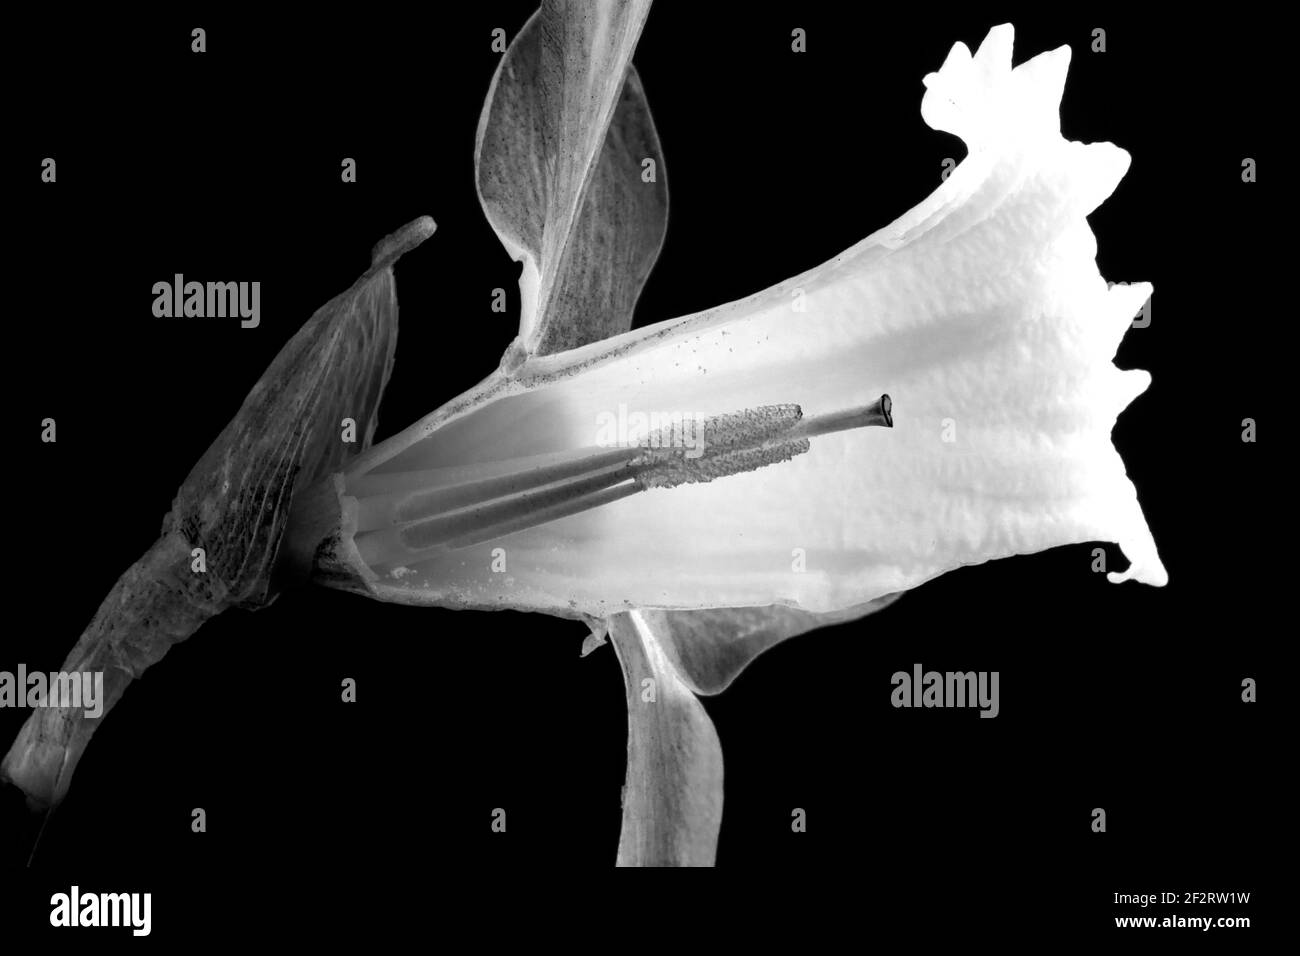 Ouvrir la fleur de la trompette de Daffodil a exposé les étamines et les anthères des parties reproductrices des plantes. Les abeilles Bumble sont des pollinisateurs courants Banque D'Images